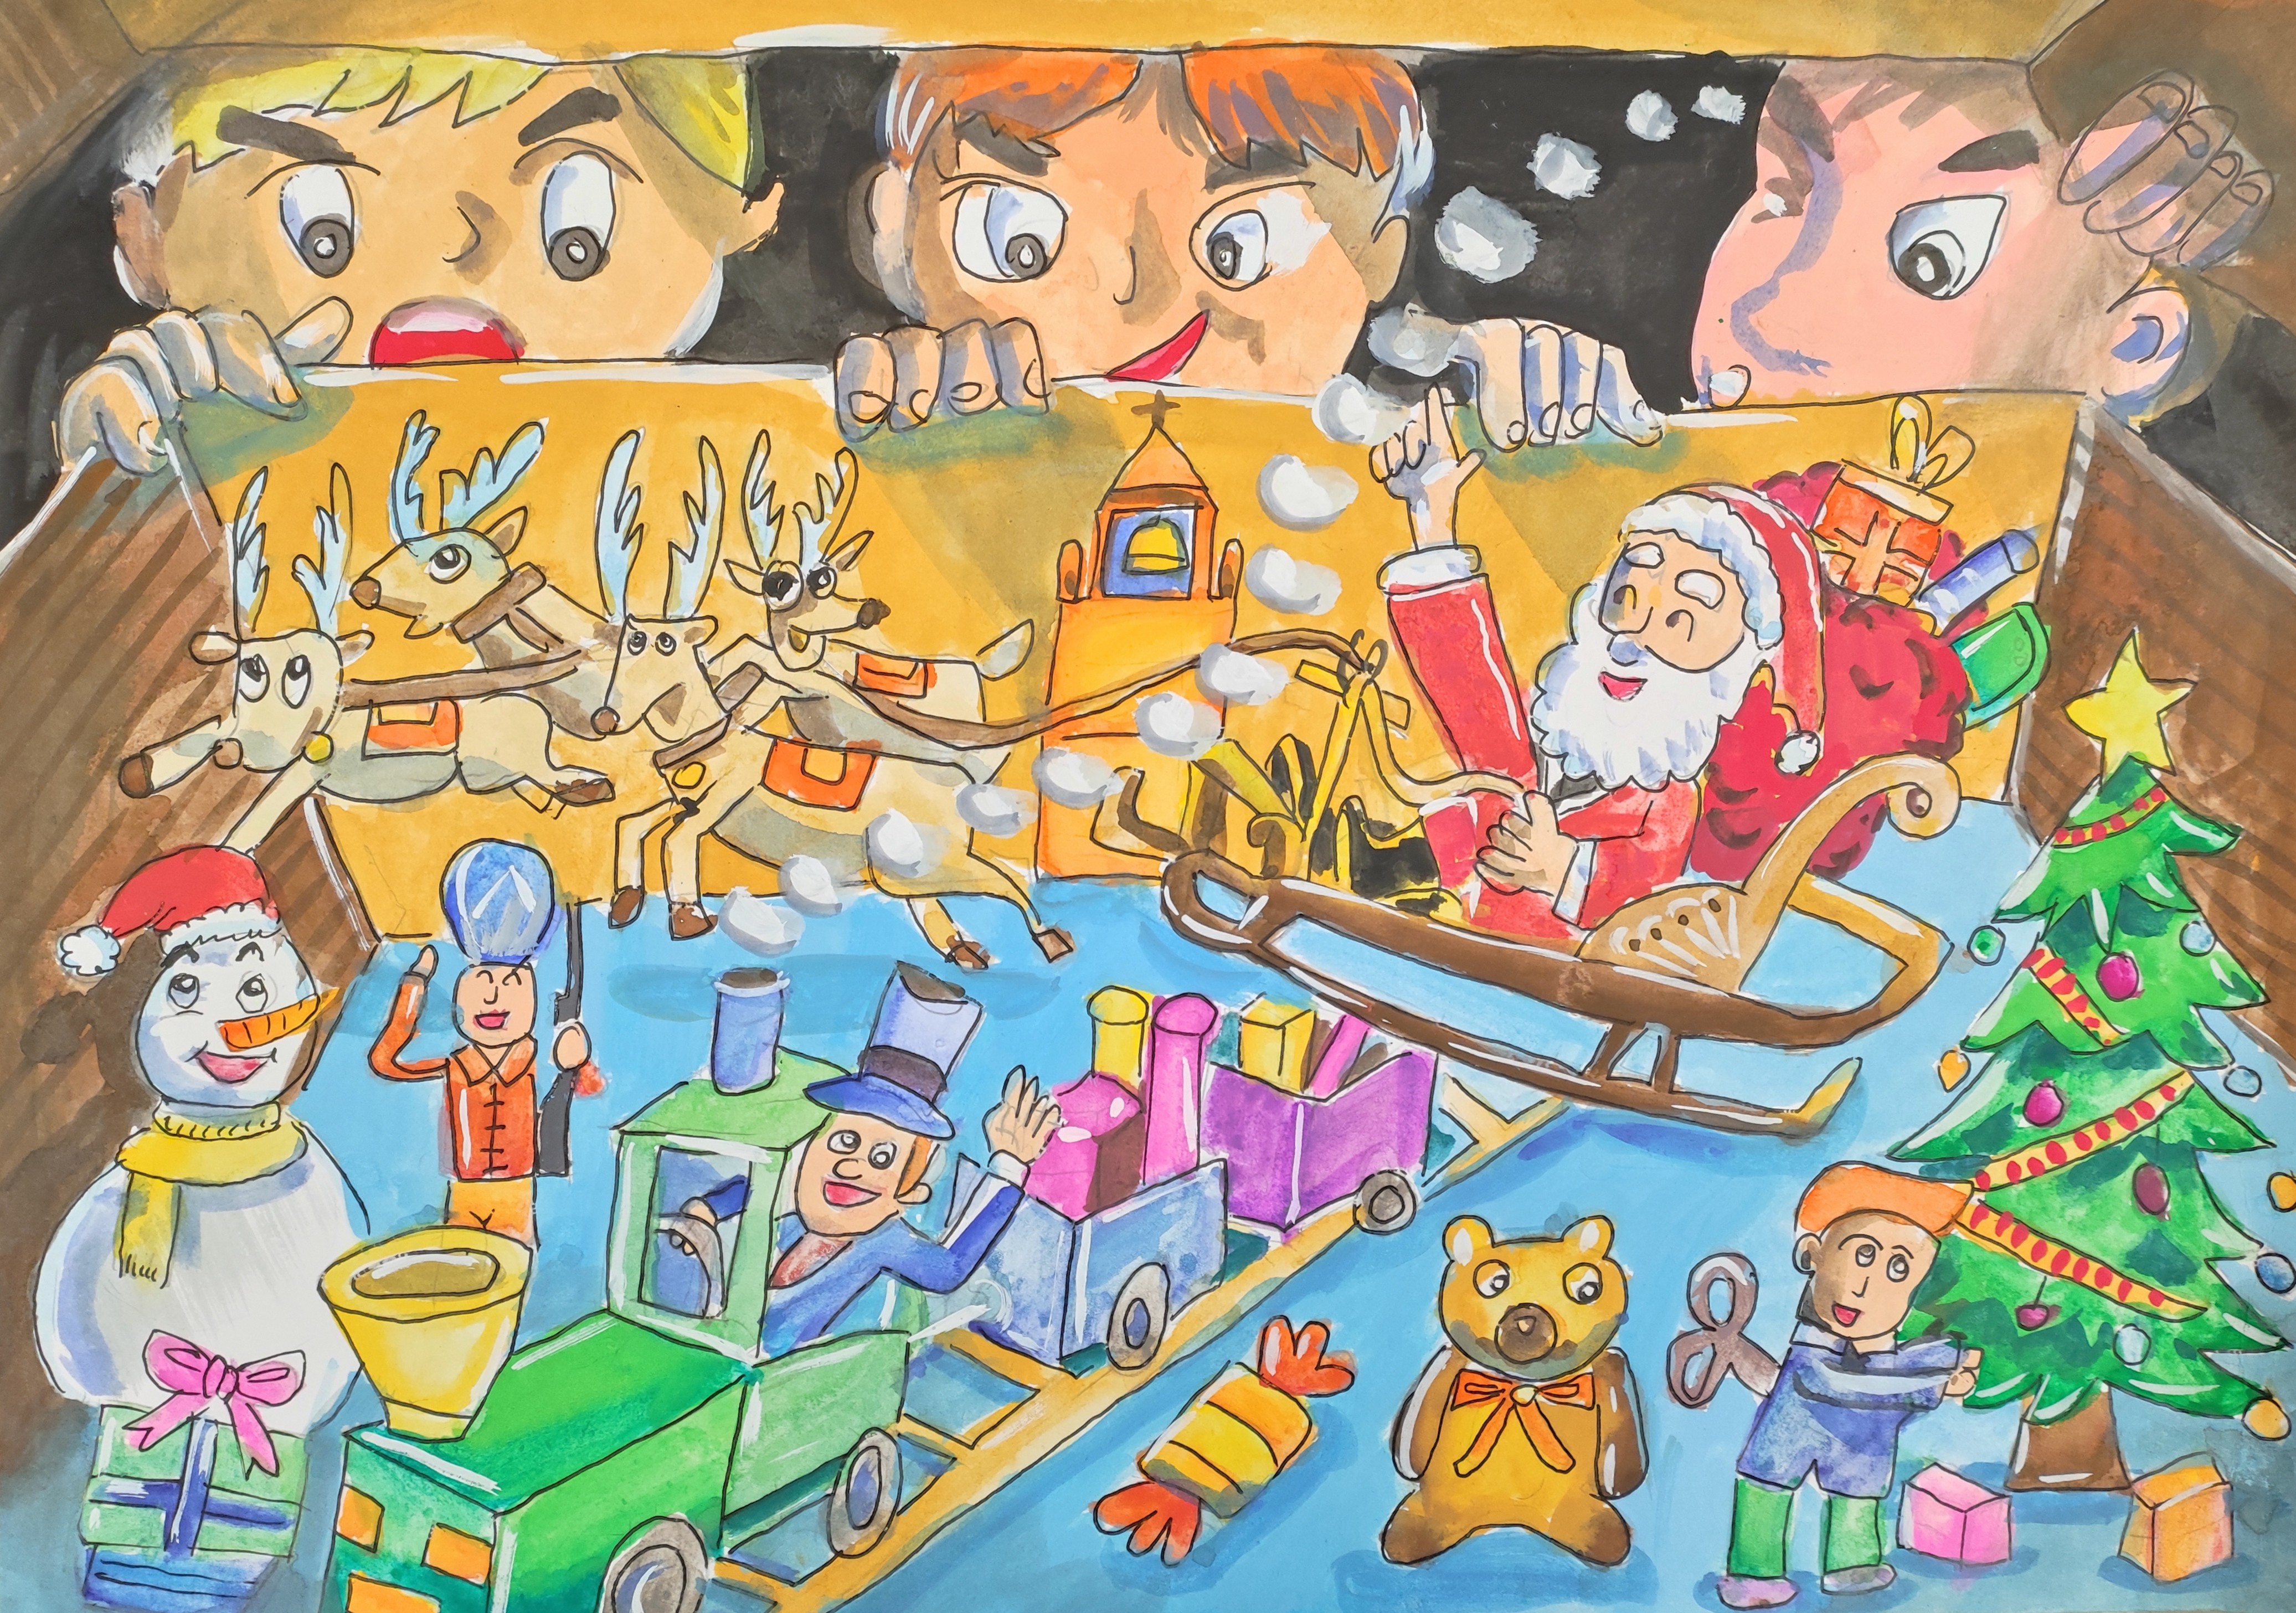 <div>繽紛聖誕-高小組-亞軍-陈韦心</div>
<div>非常有創意的畫面，小朋友們偷看了寶箱內一個奇幻聖誕畫面！</div>
<div>元素及色彩多元，讓觀看者目不暇給。</div>